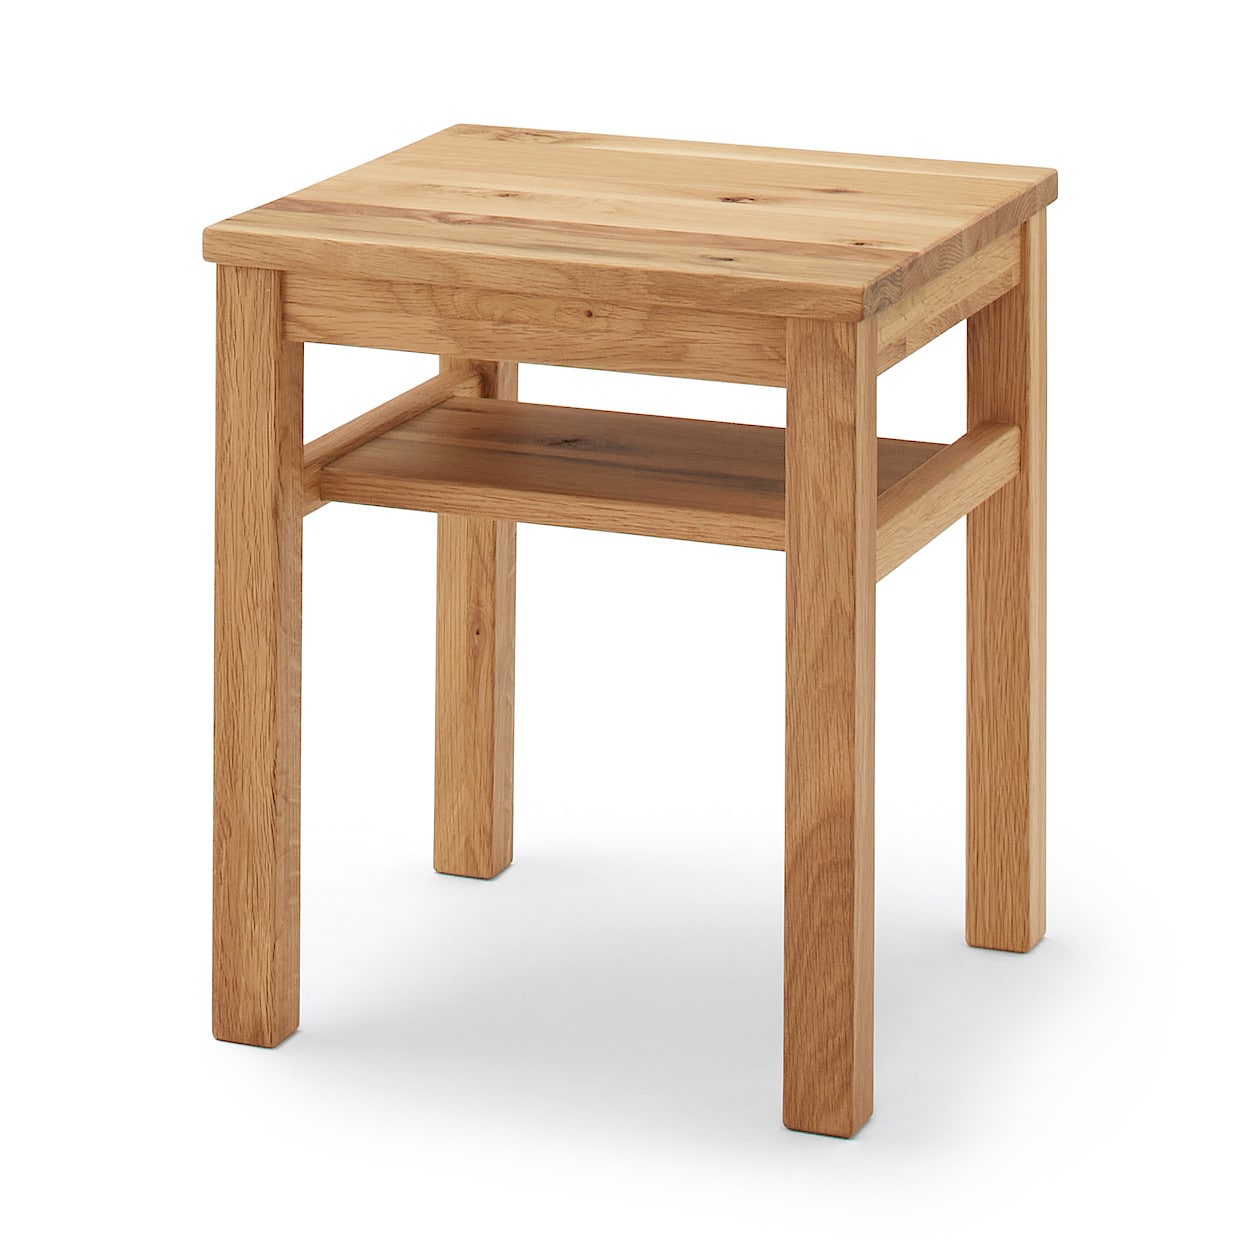 木製サイドテーブルベンチ 板座 節あり | 無印良品